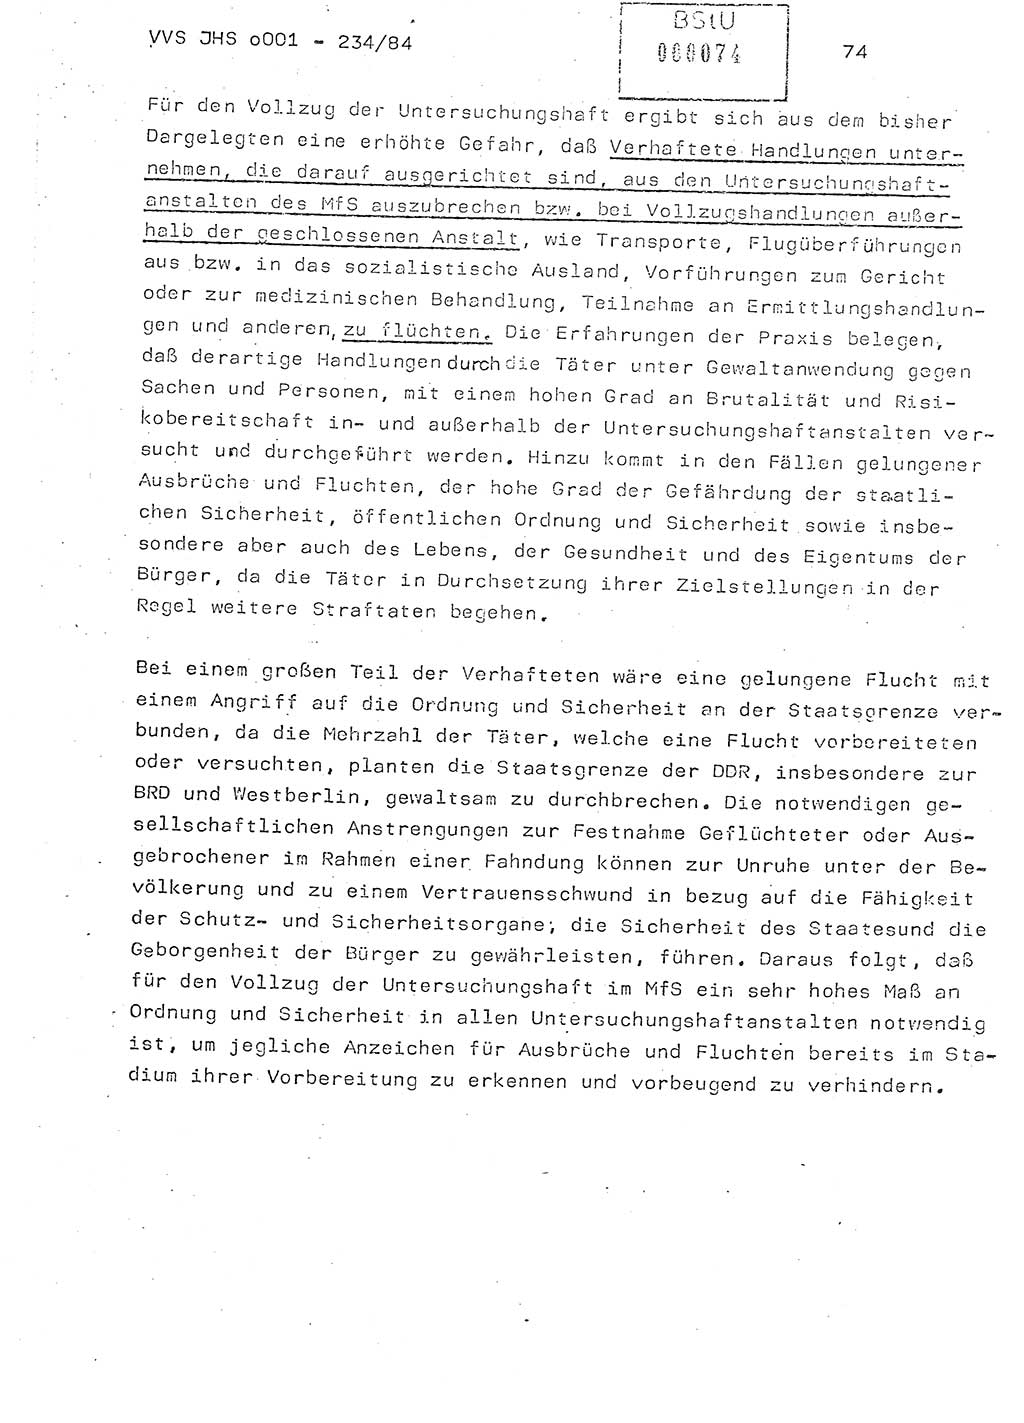 Dissertation Oberst Siegfried Rataizick (Abt. ⅩⅣ), Oberstleutnant Volkmar Heinz (Abt. ⅩⅣ), Oberstleutnant Werner Stein (HA Ⅸ), Hauptmann Heinz Conrad (JHS), Ministerium für Staatssicherheit (MfS) [Deutsche Demokratische Republik (DDR)], Juristische Hochschule (JHS), Vertrauliche Verschlußsache (VVS) o001-234/84, Potsdam 1984, Seite 74 (Diss. MfS DDR JHS VVS o001-234/84 1984, S. 74)